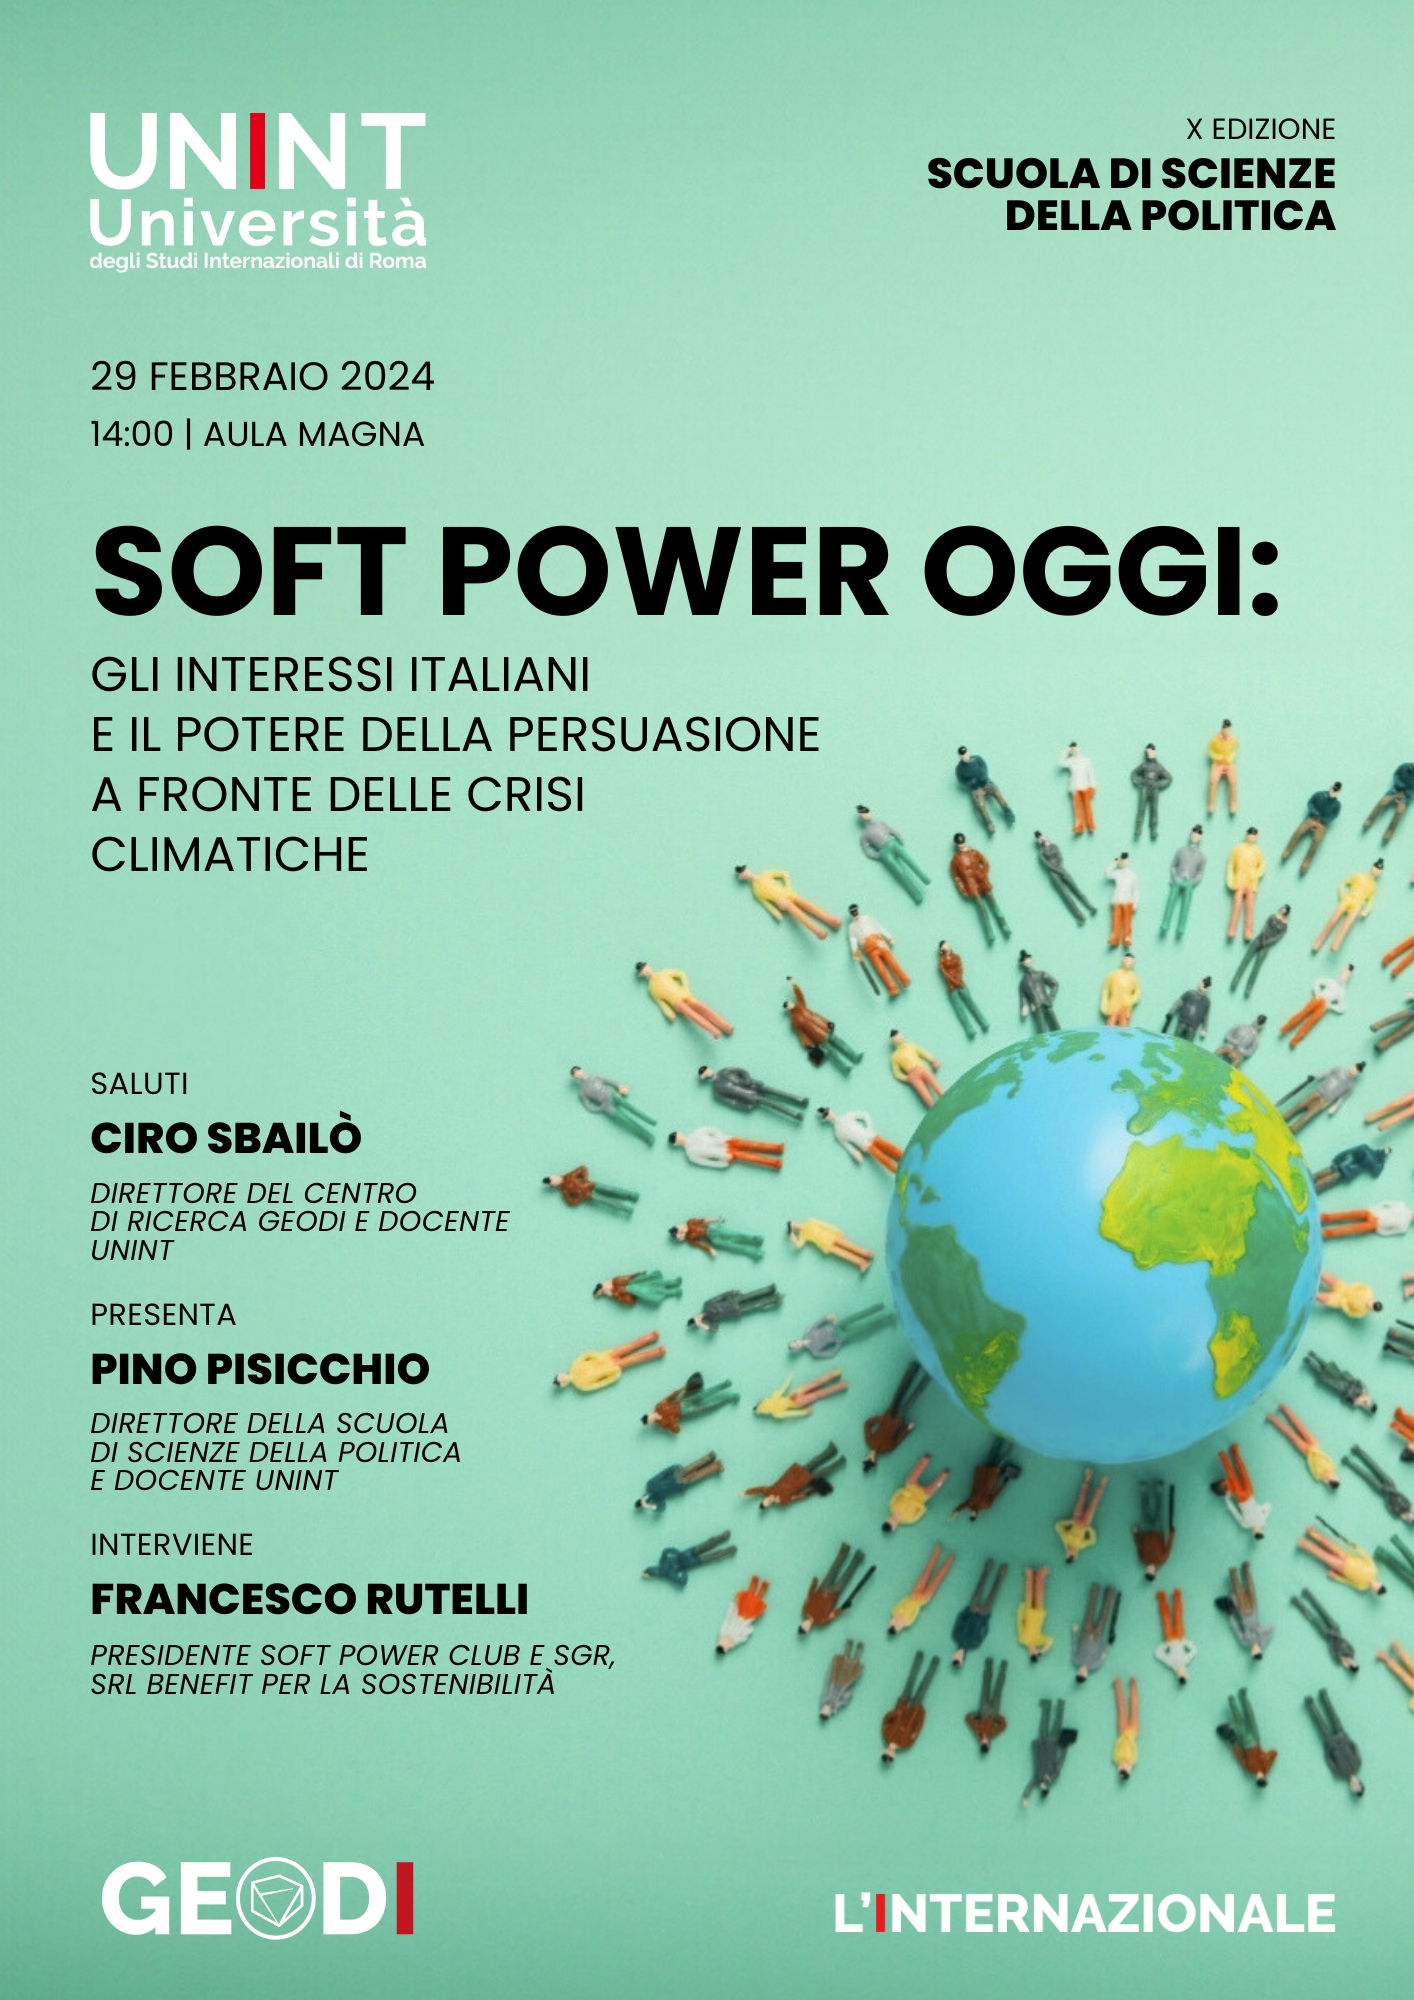 Soft Power oggi: gli interessi italiani e il potere della persuasione a fronte delle crisi climatiche